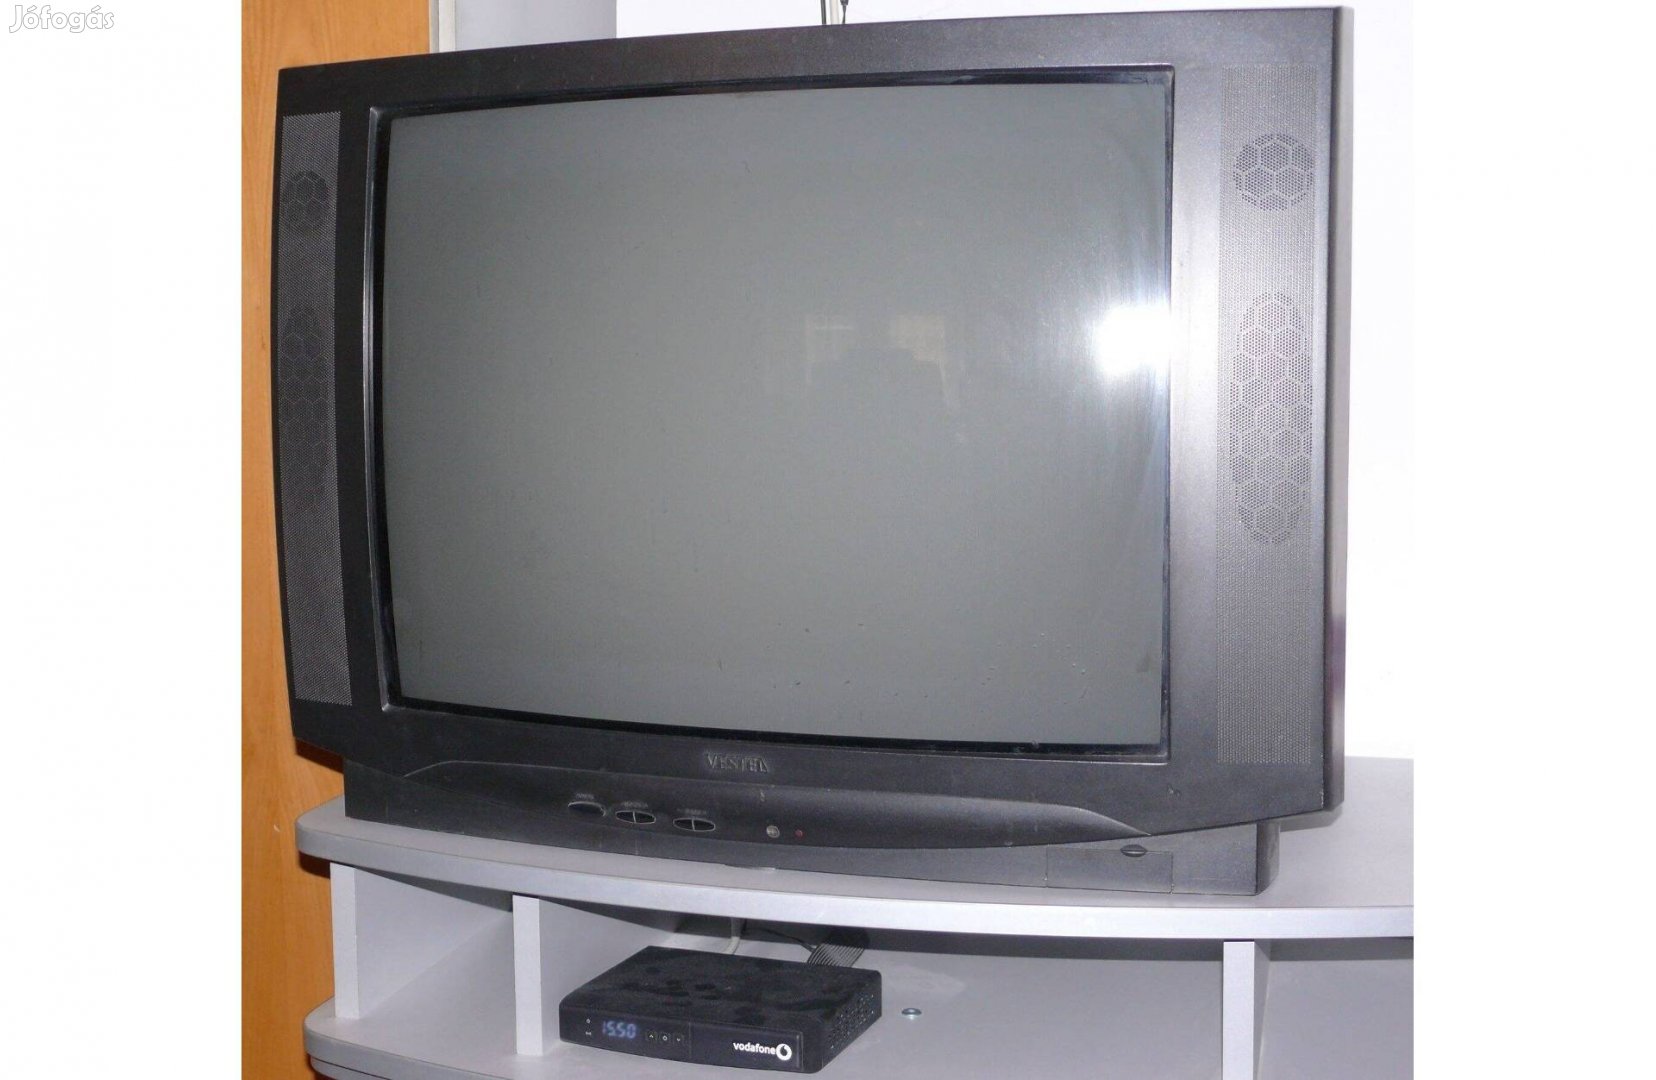 Olcsón eladó régi Vestel TV (72 cm-es képátló)!